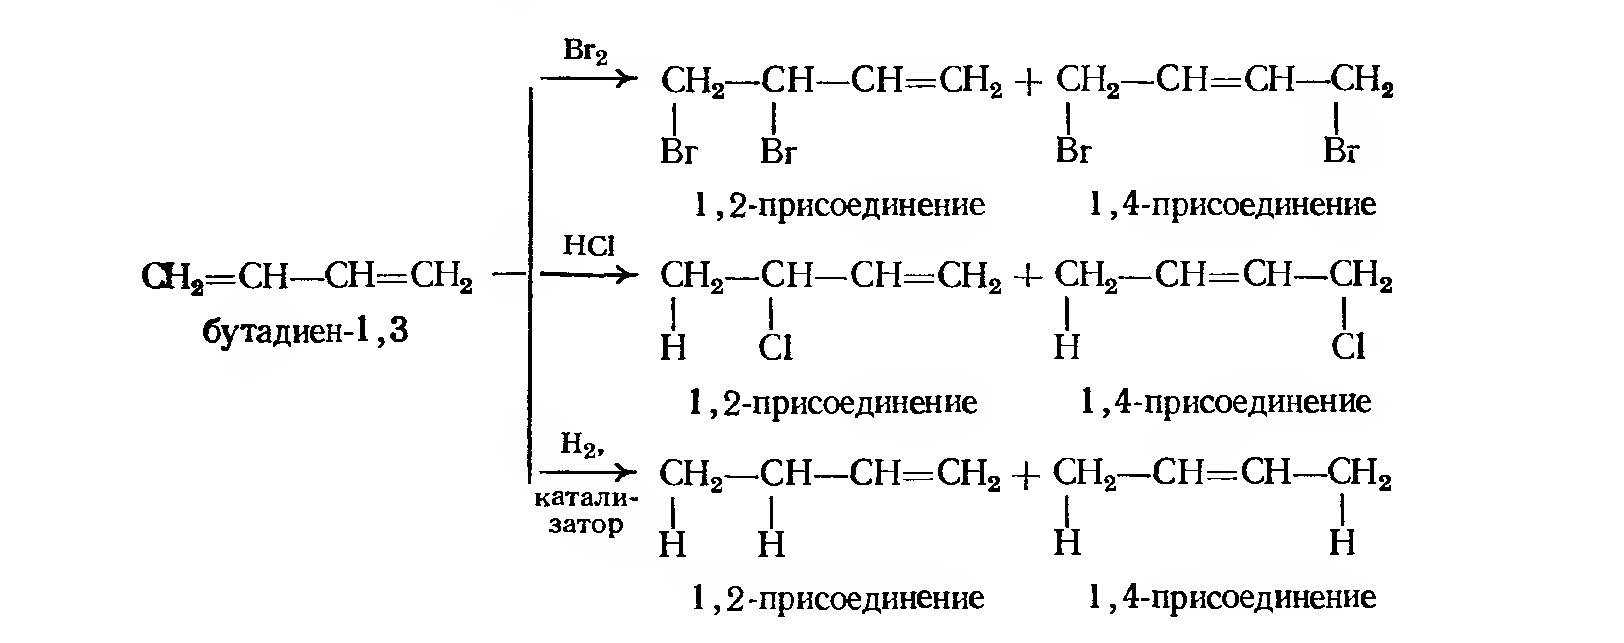 Хлорирование бутадиена. Схема полимеризации хлоропрена. Присоединение hbr к бутадиену 1,3. Гидробромирование бутадиена-1.3. Бутадиен 13 и бромоводород.